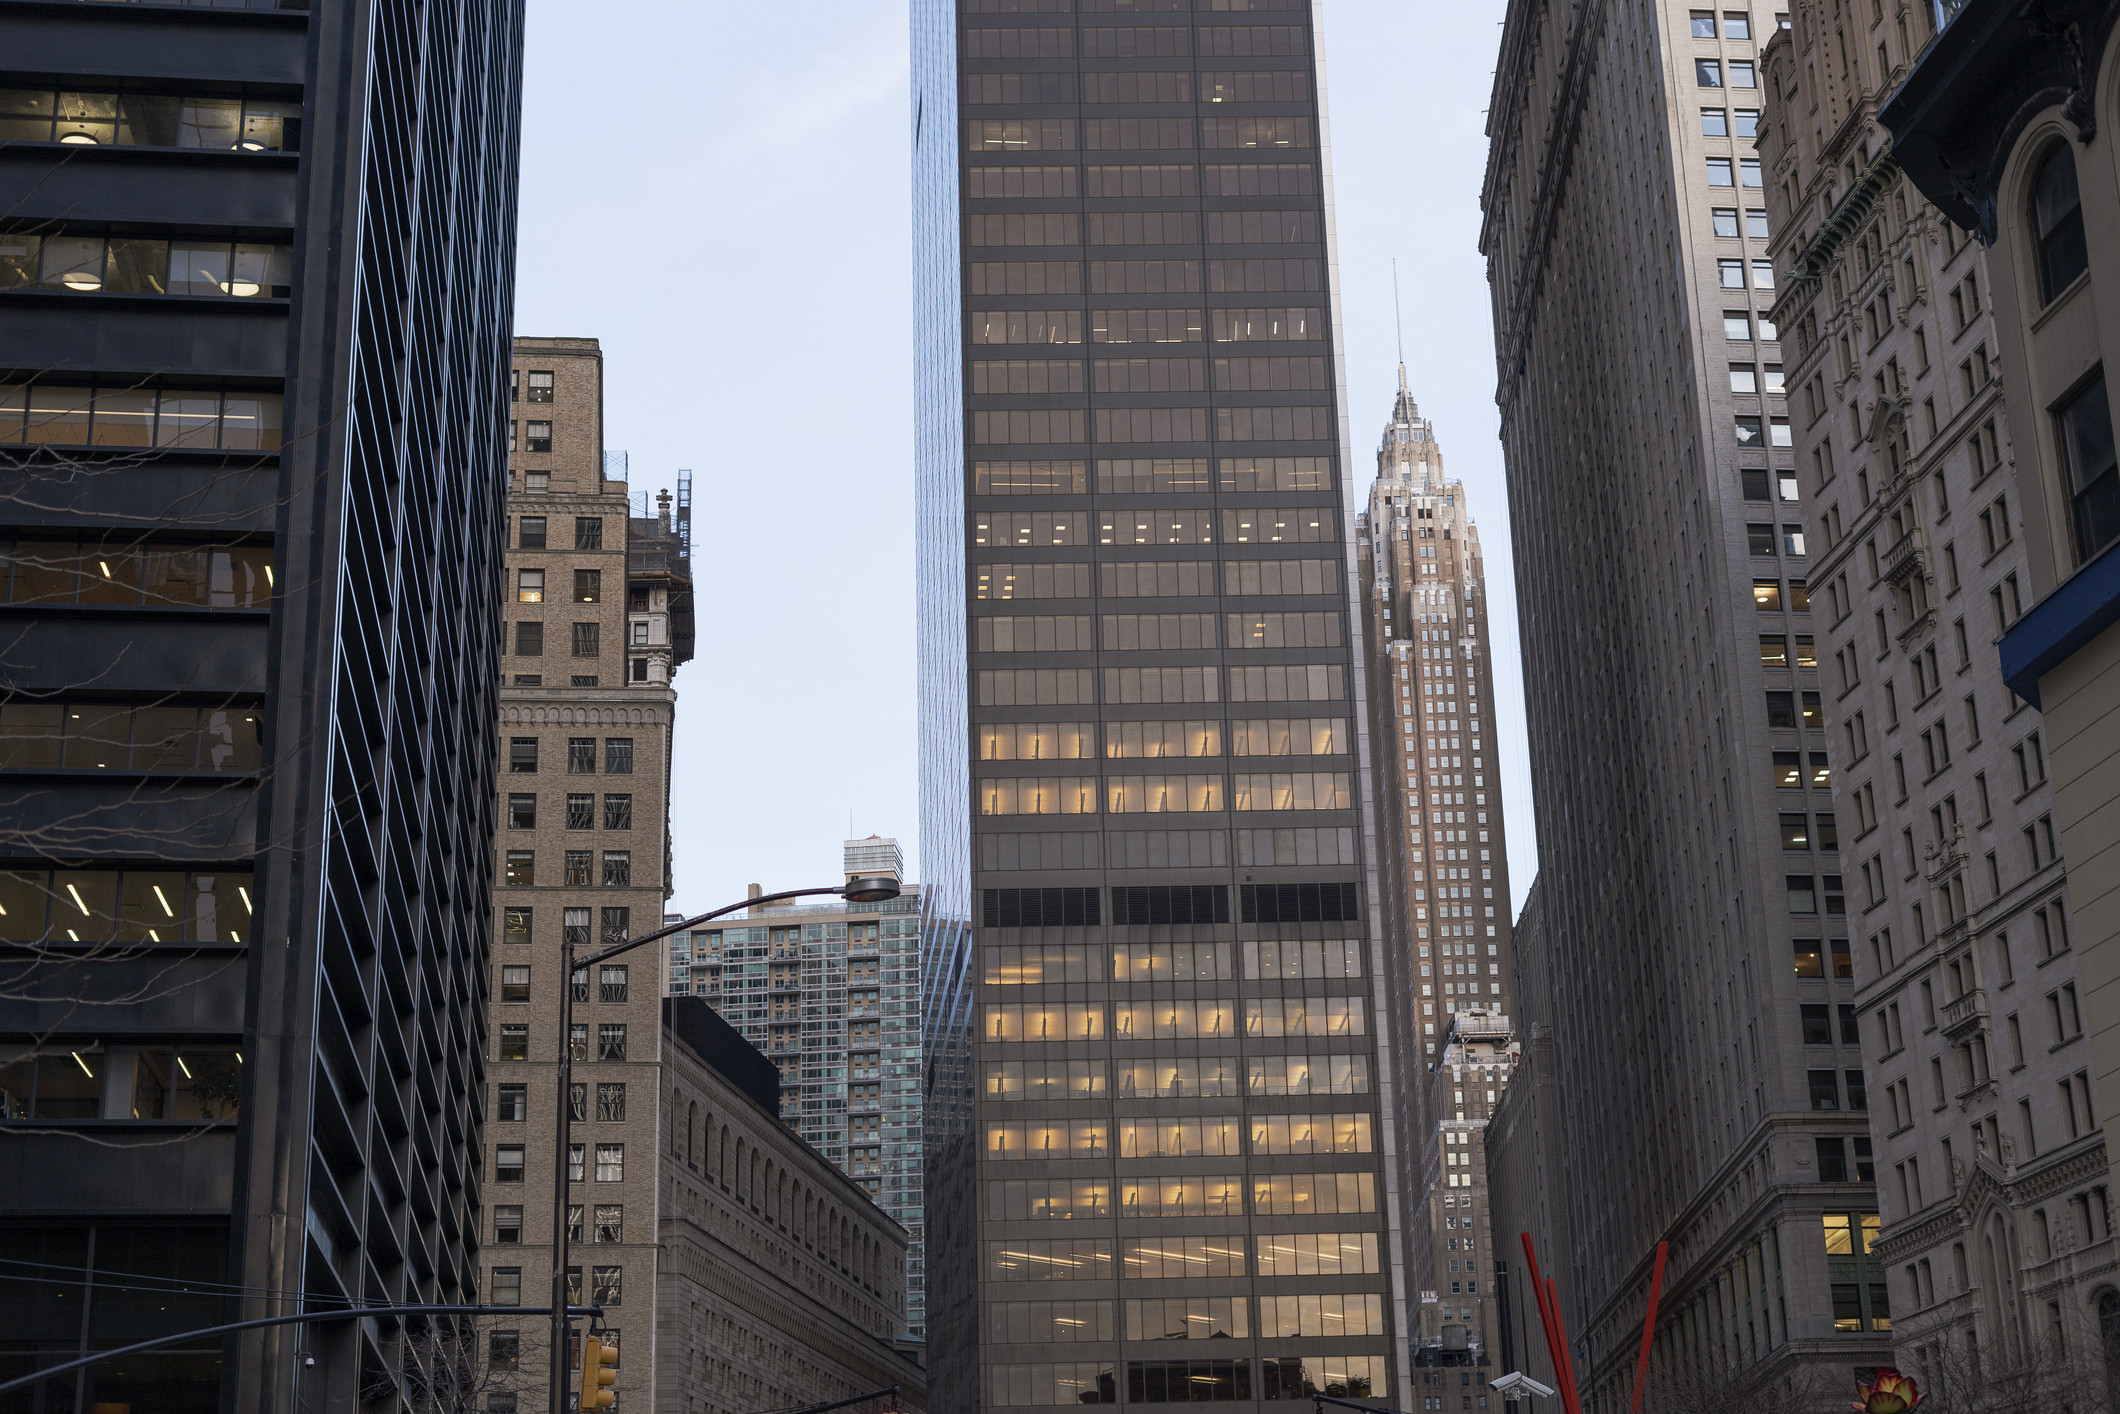 Facade of NYC buildings